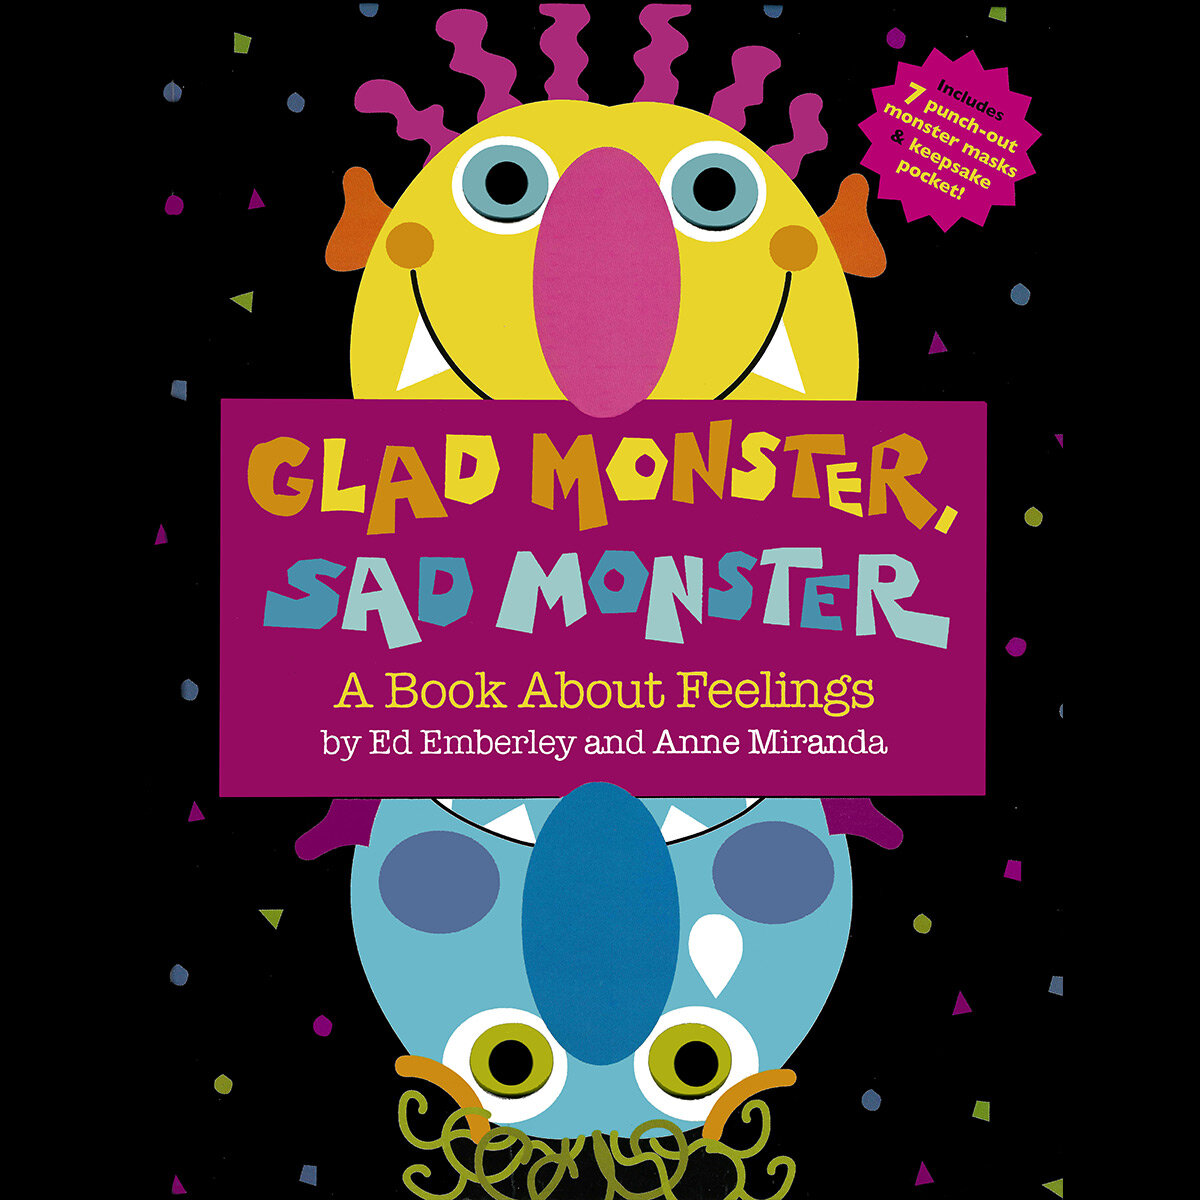 Gald Monster Sad Monster illustrated by Ed Emblerley